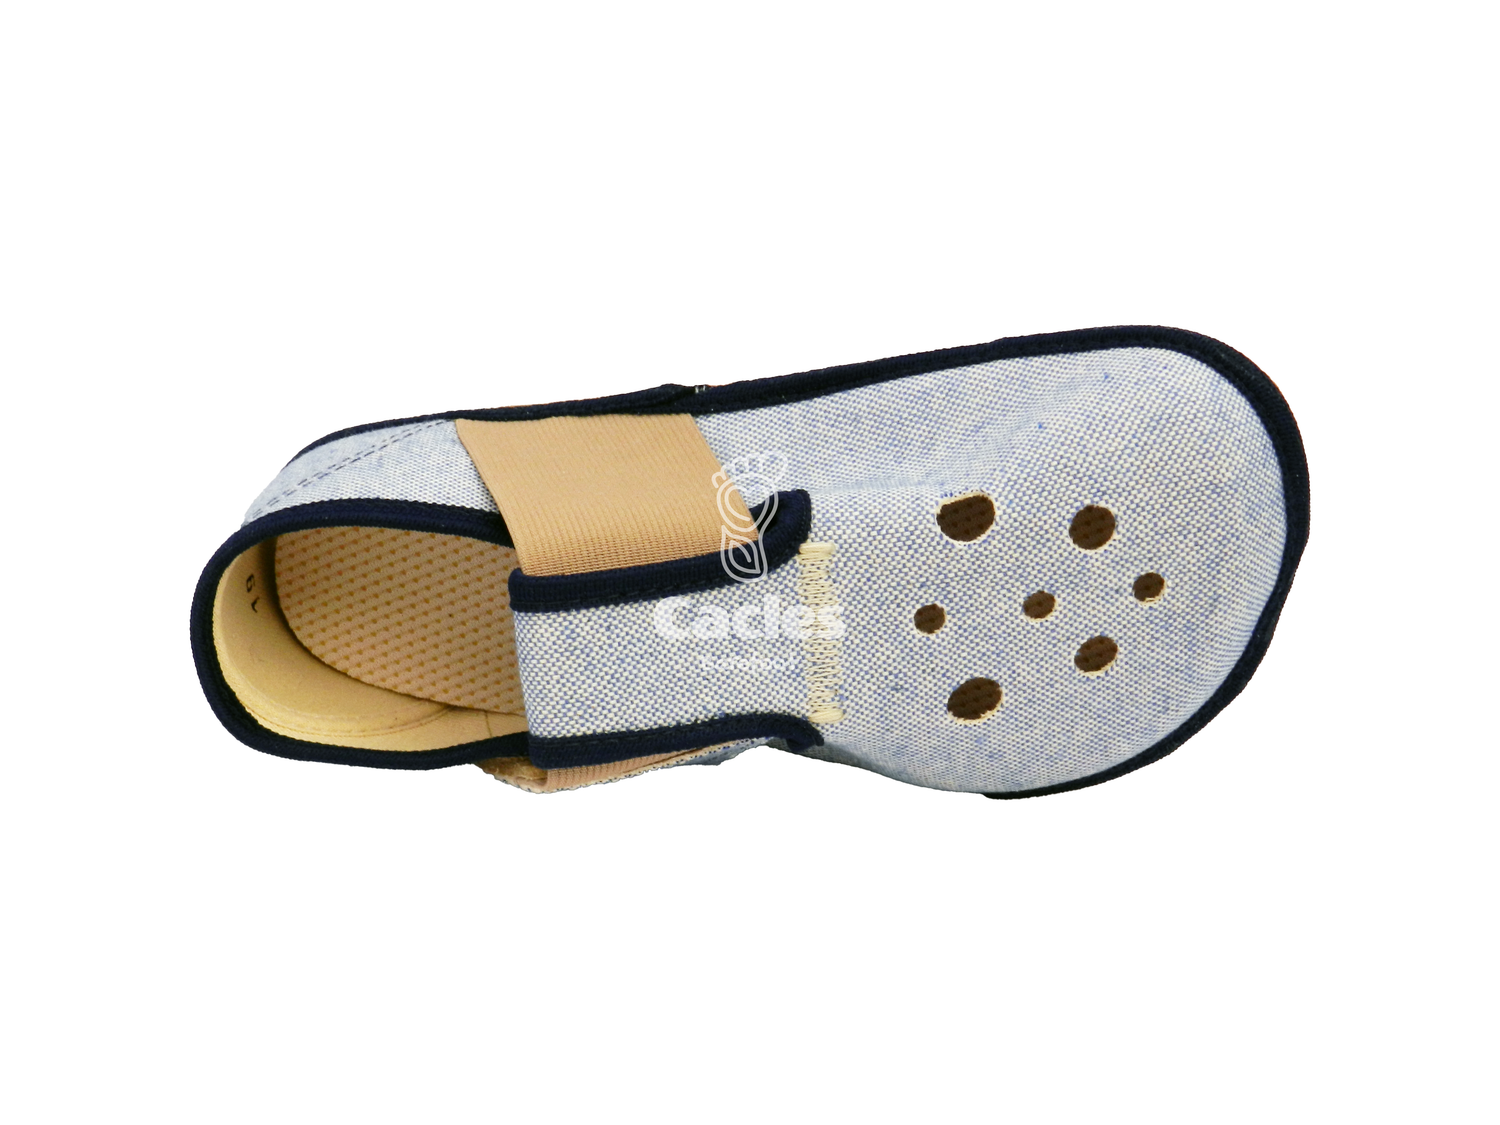 Pegres - BF03 - zapatillas de casa barefoot - azul – Cacles Barefoot